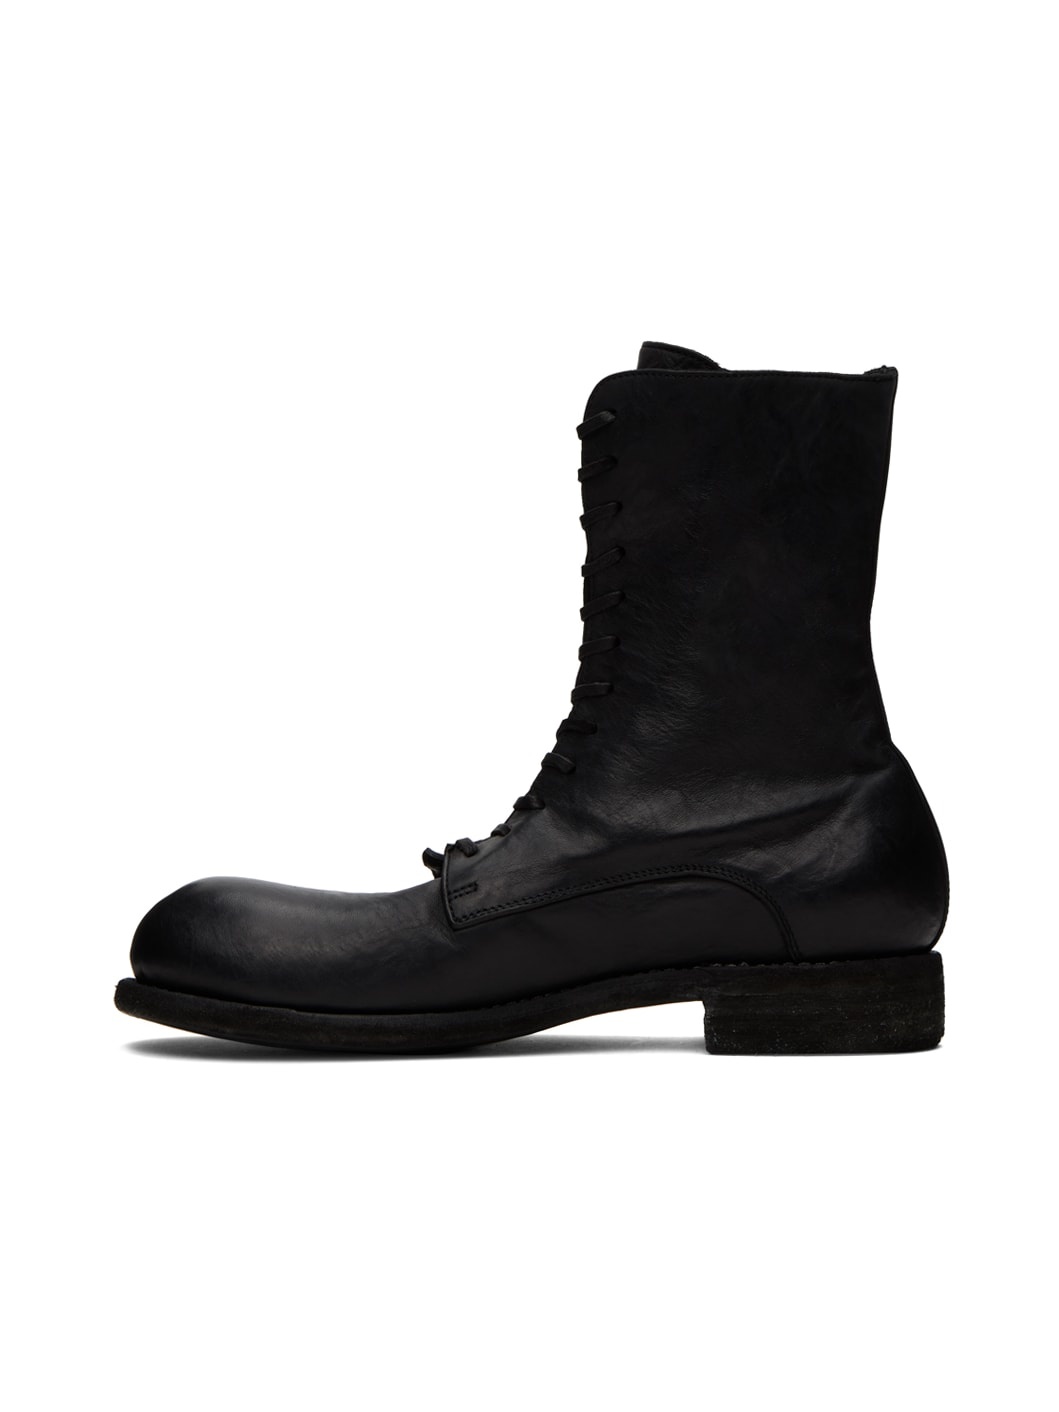 Black GR05 Boots - 3